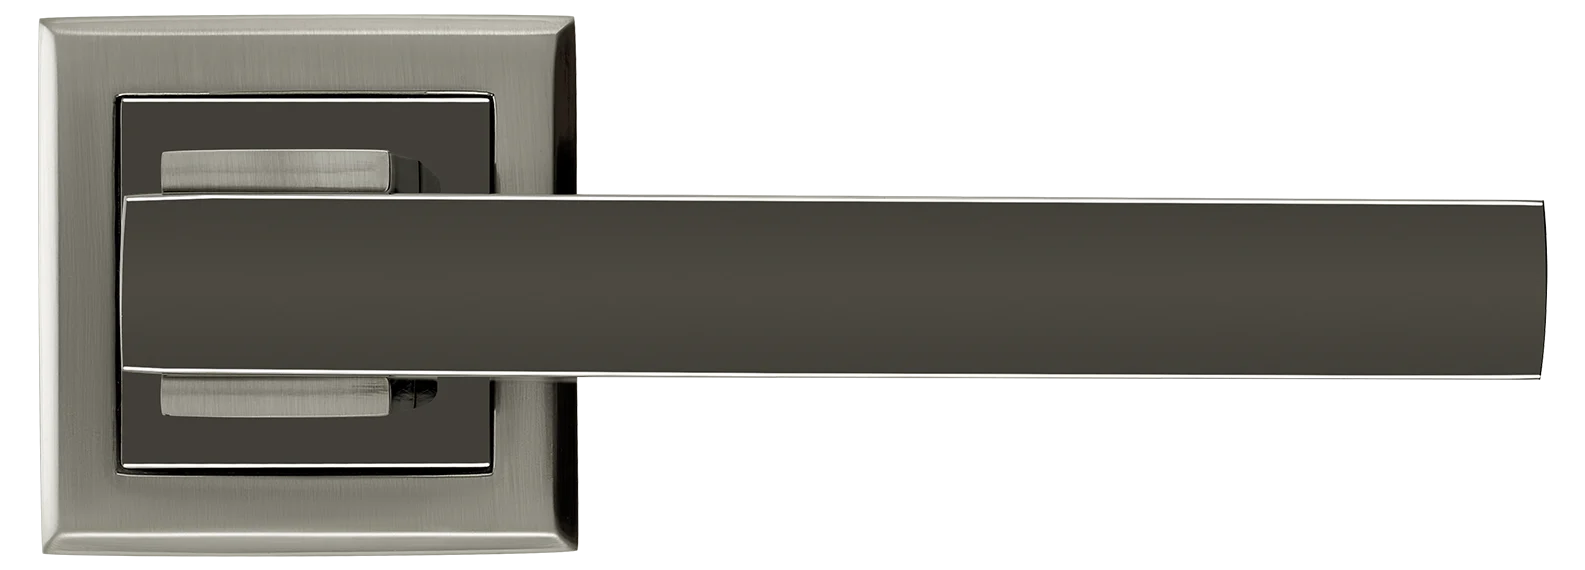 PIQUADRO, ручка дверная MH-37 SN/BN-S, на квадратной накладке, цвет - бел. никель/черн. никель фото купить в Воронеже